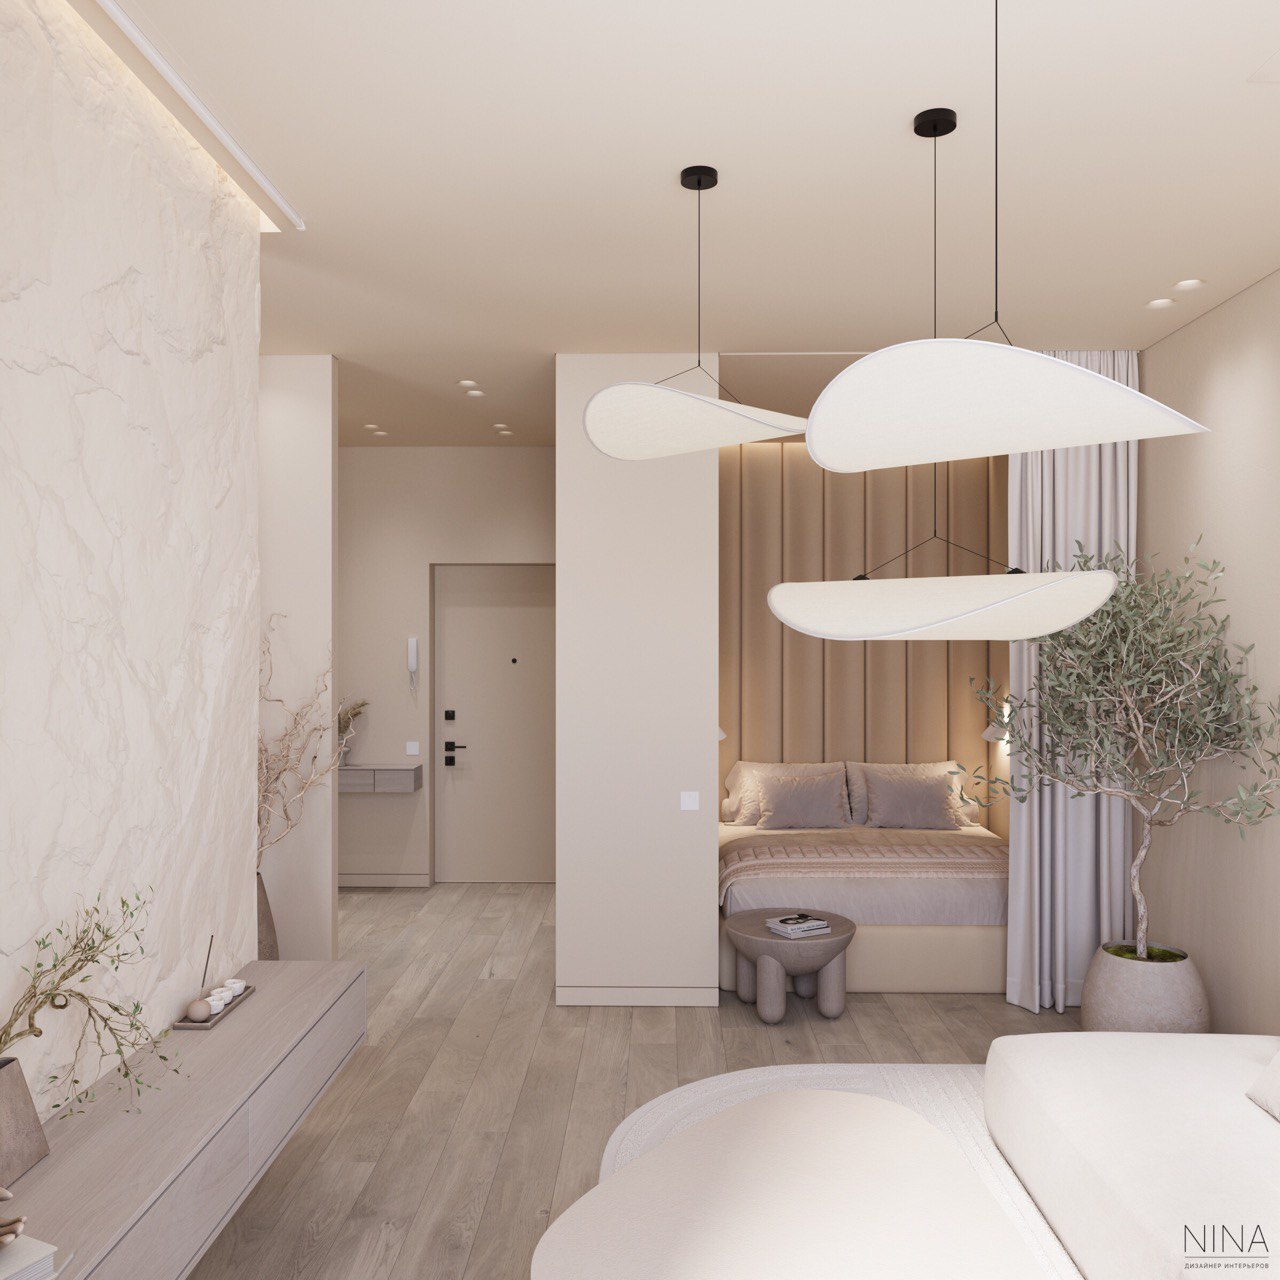 Интерьер гостиной с подсветкой настенной, подсветкой светодиодной и светильниками над кроватью